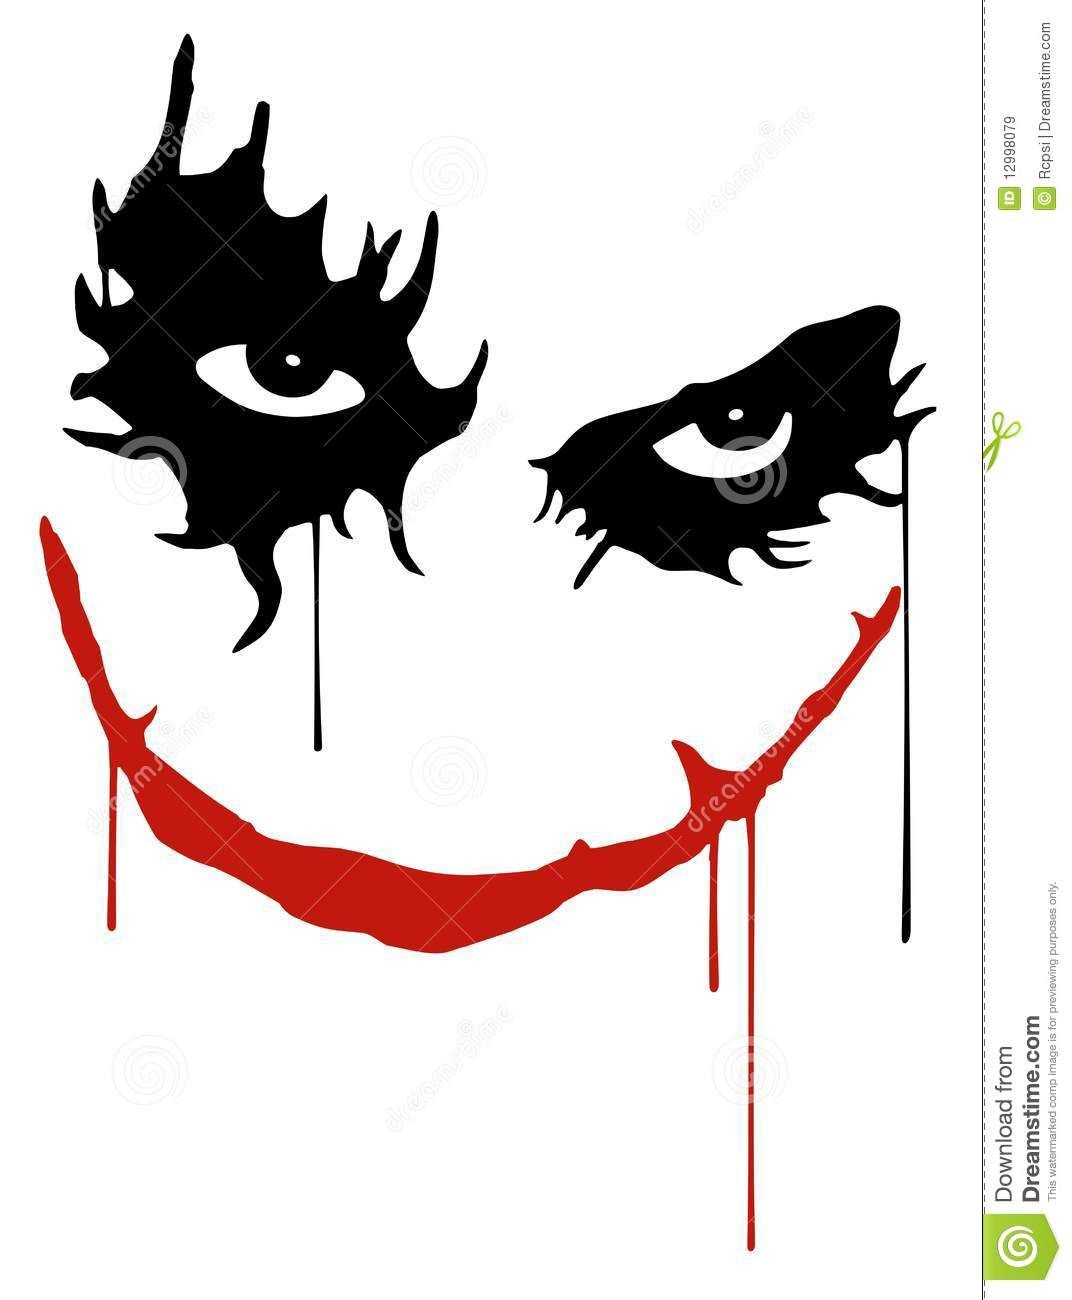 Images For > Joker Card Pumpkin Stencil | Joker Pumpkin Pertaining To Joker Card Template